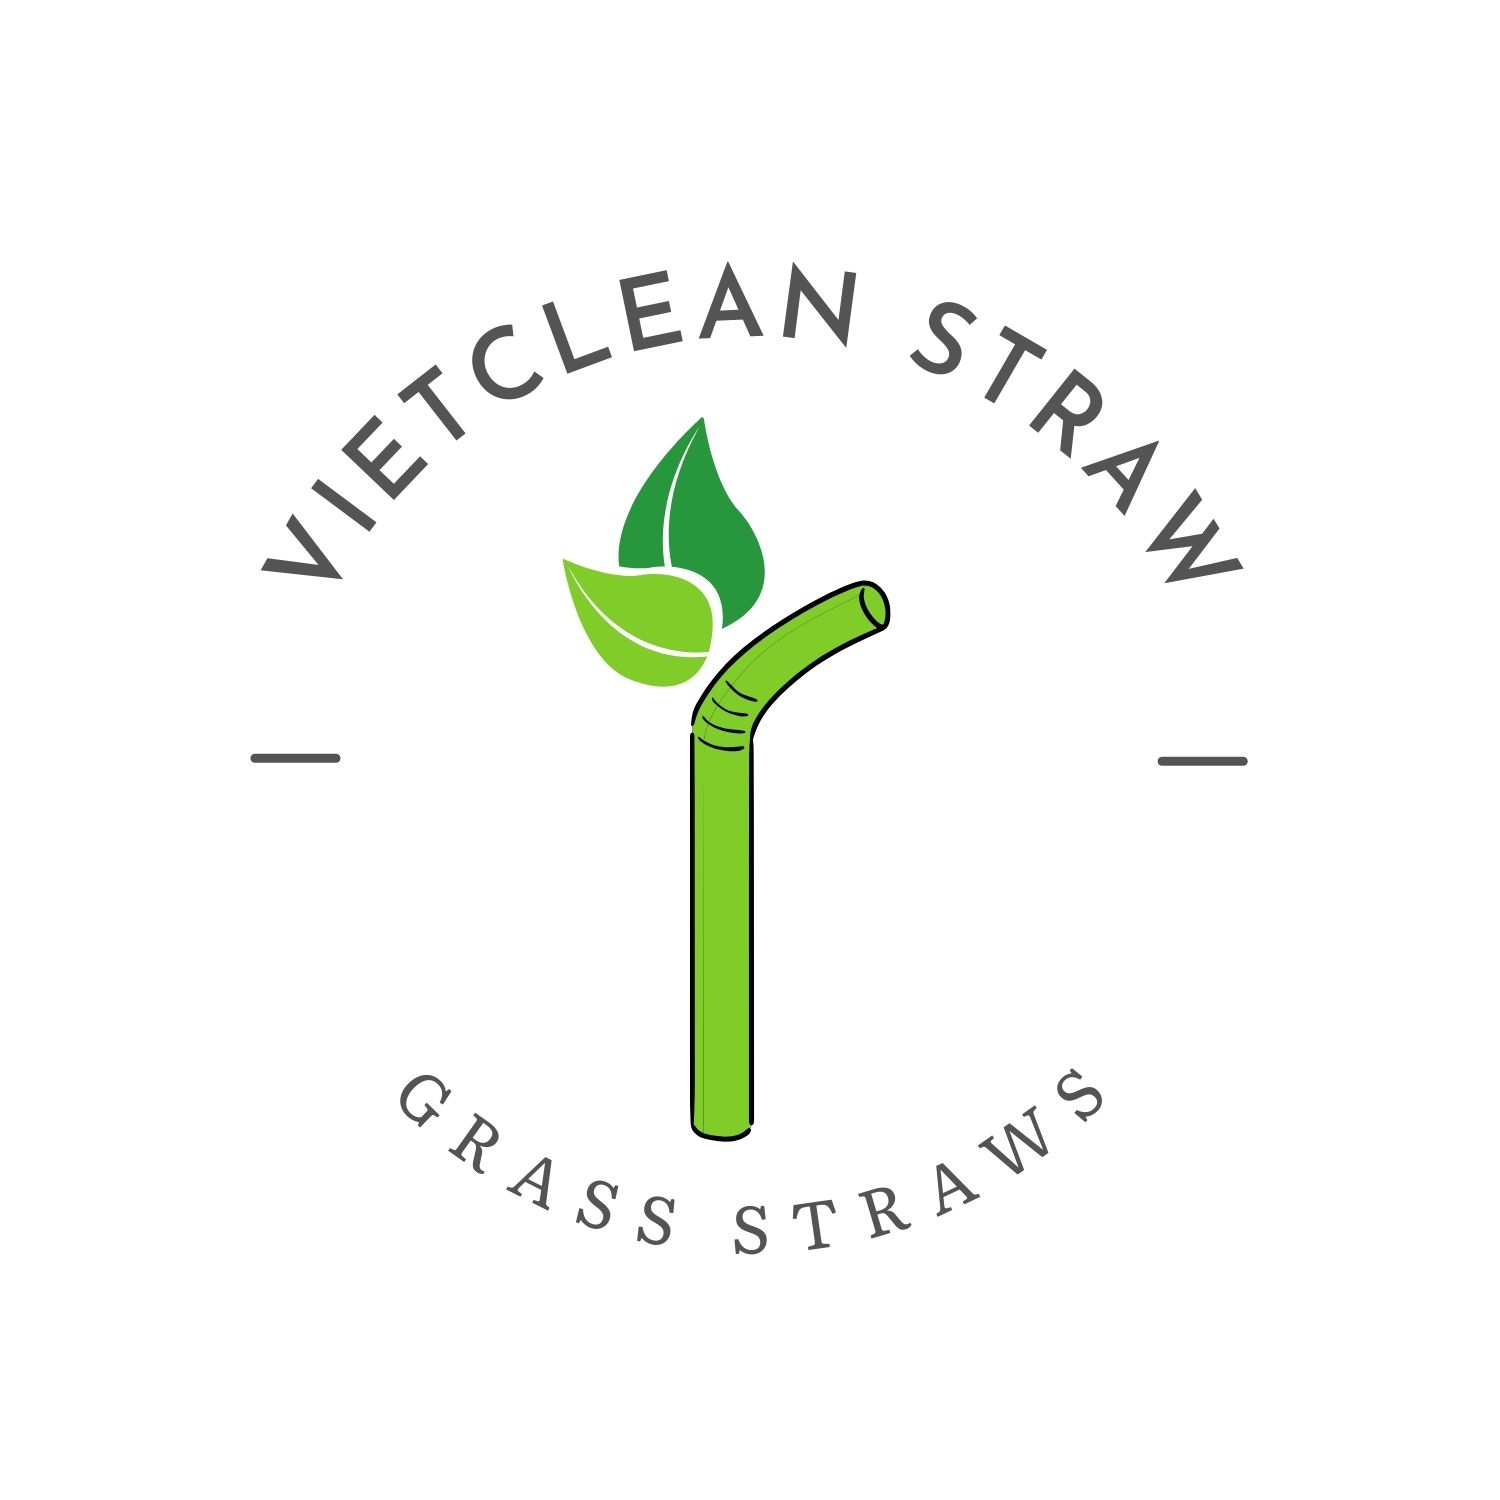 VietClean Straw